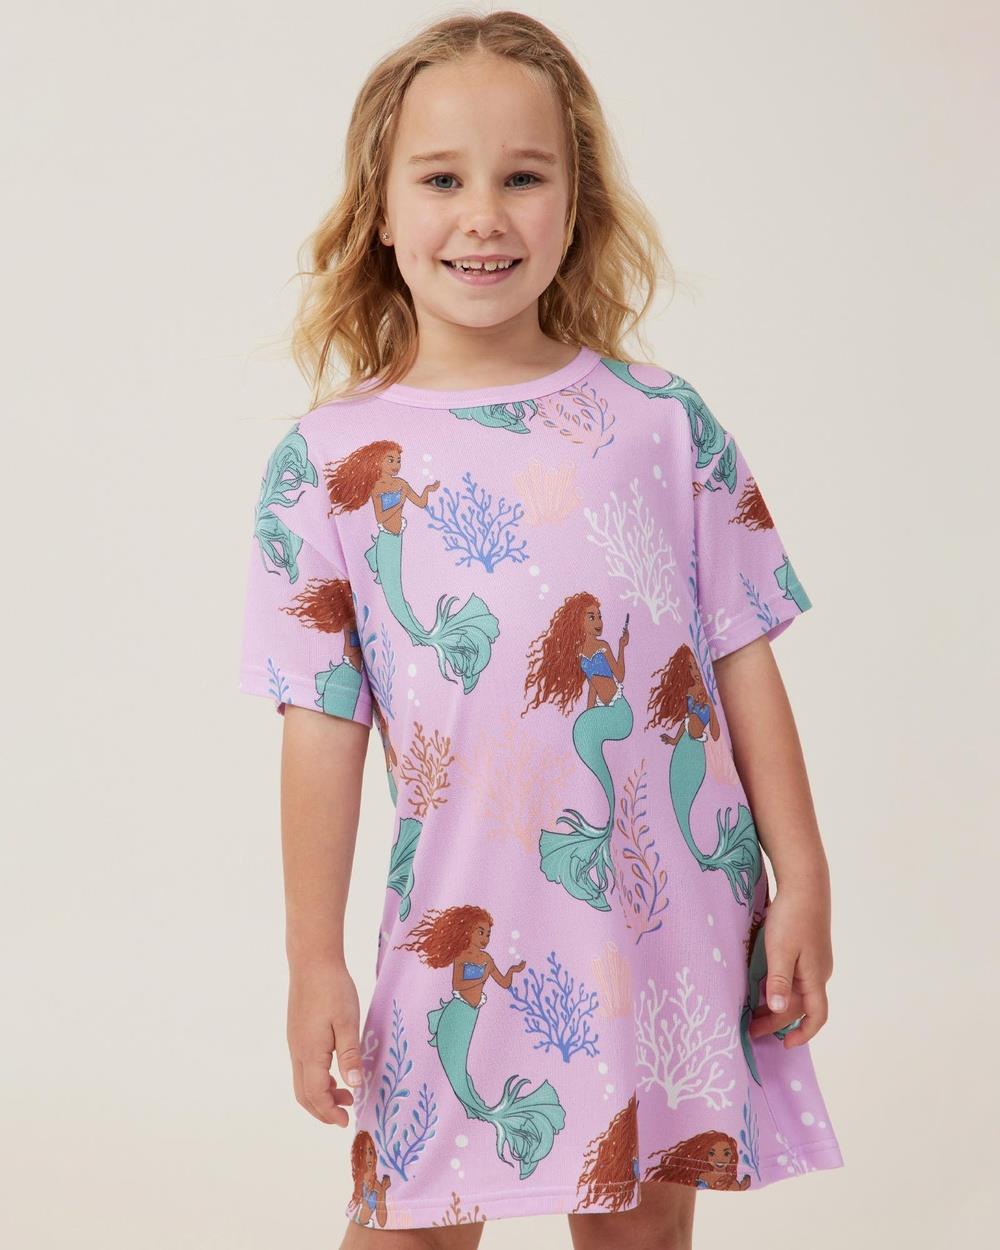 Cotton On Kids - Megan T Shirt Nightie Licensed Kids Teens - Sleepwear (Licensed Disney Pale Violet & The Little Mermaid) Megan T-Shirt Nightie Licensed - Kids-Teens